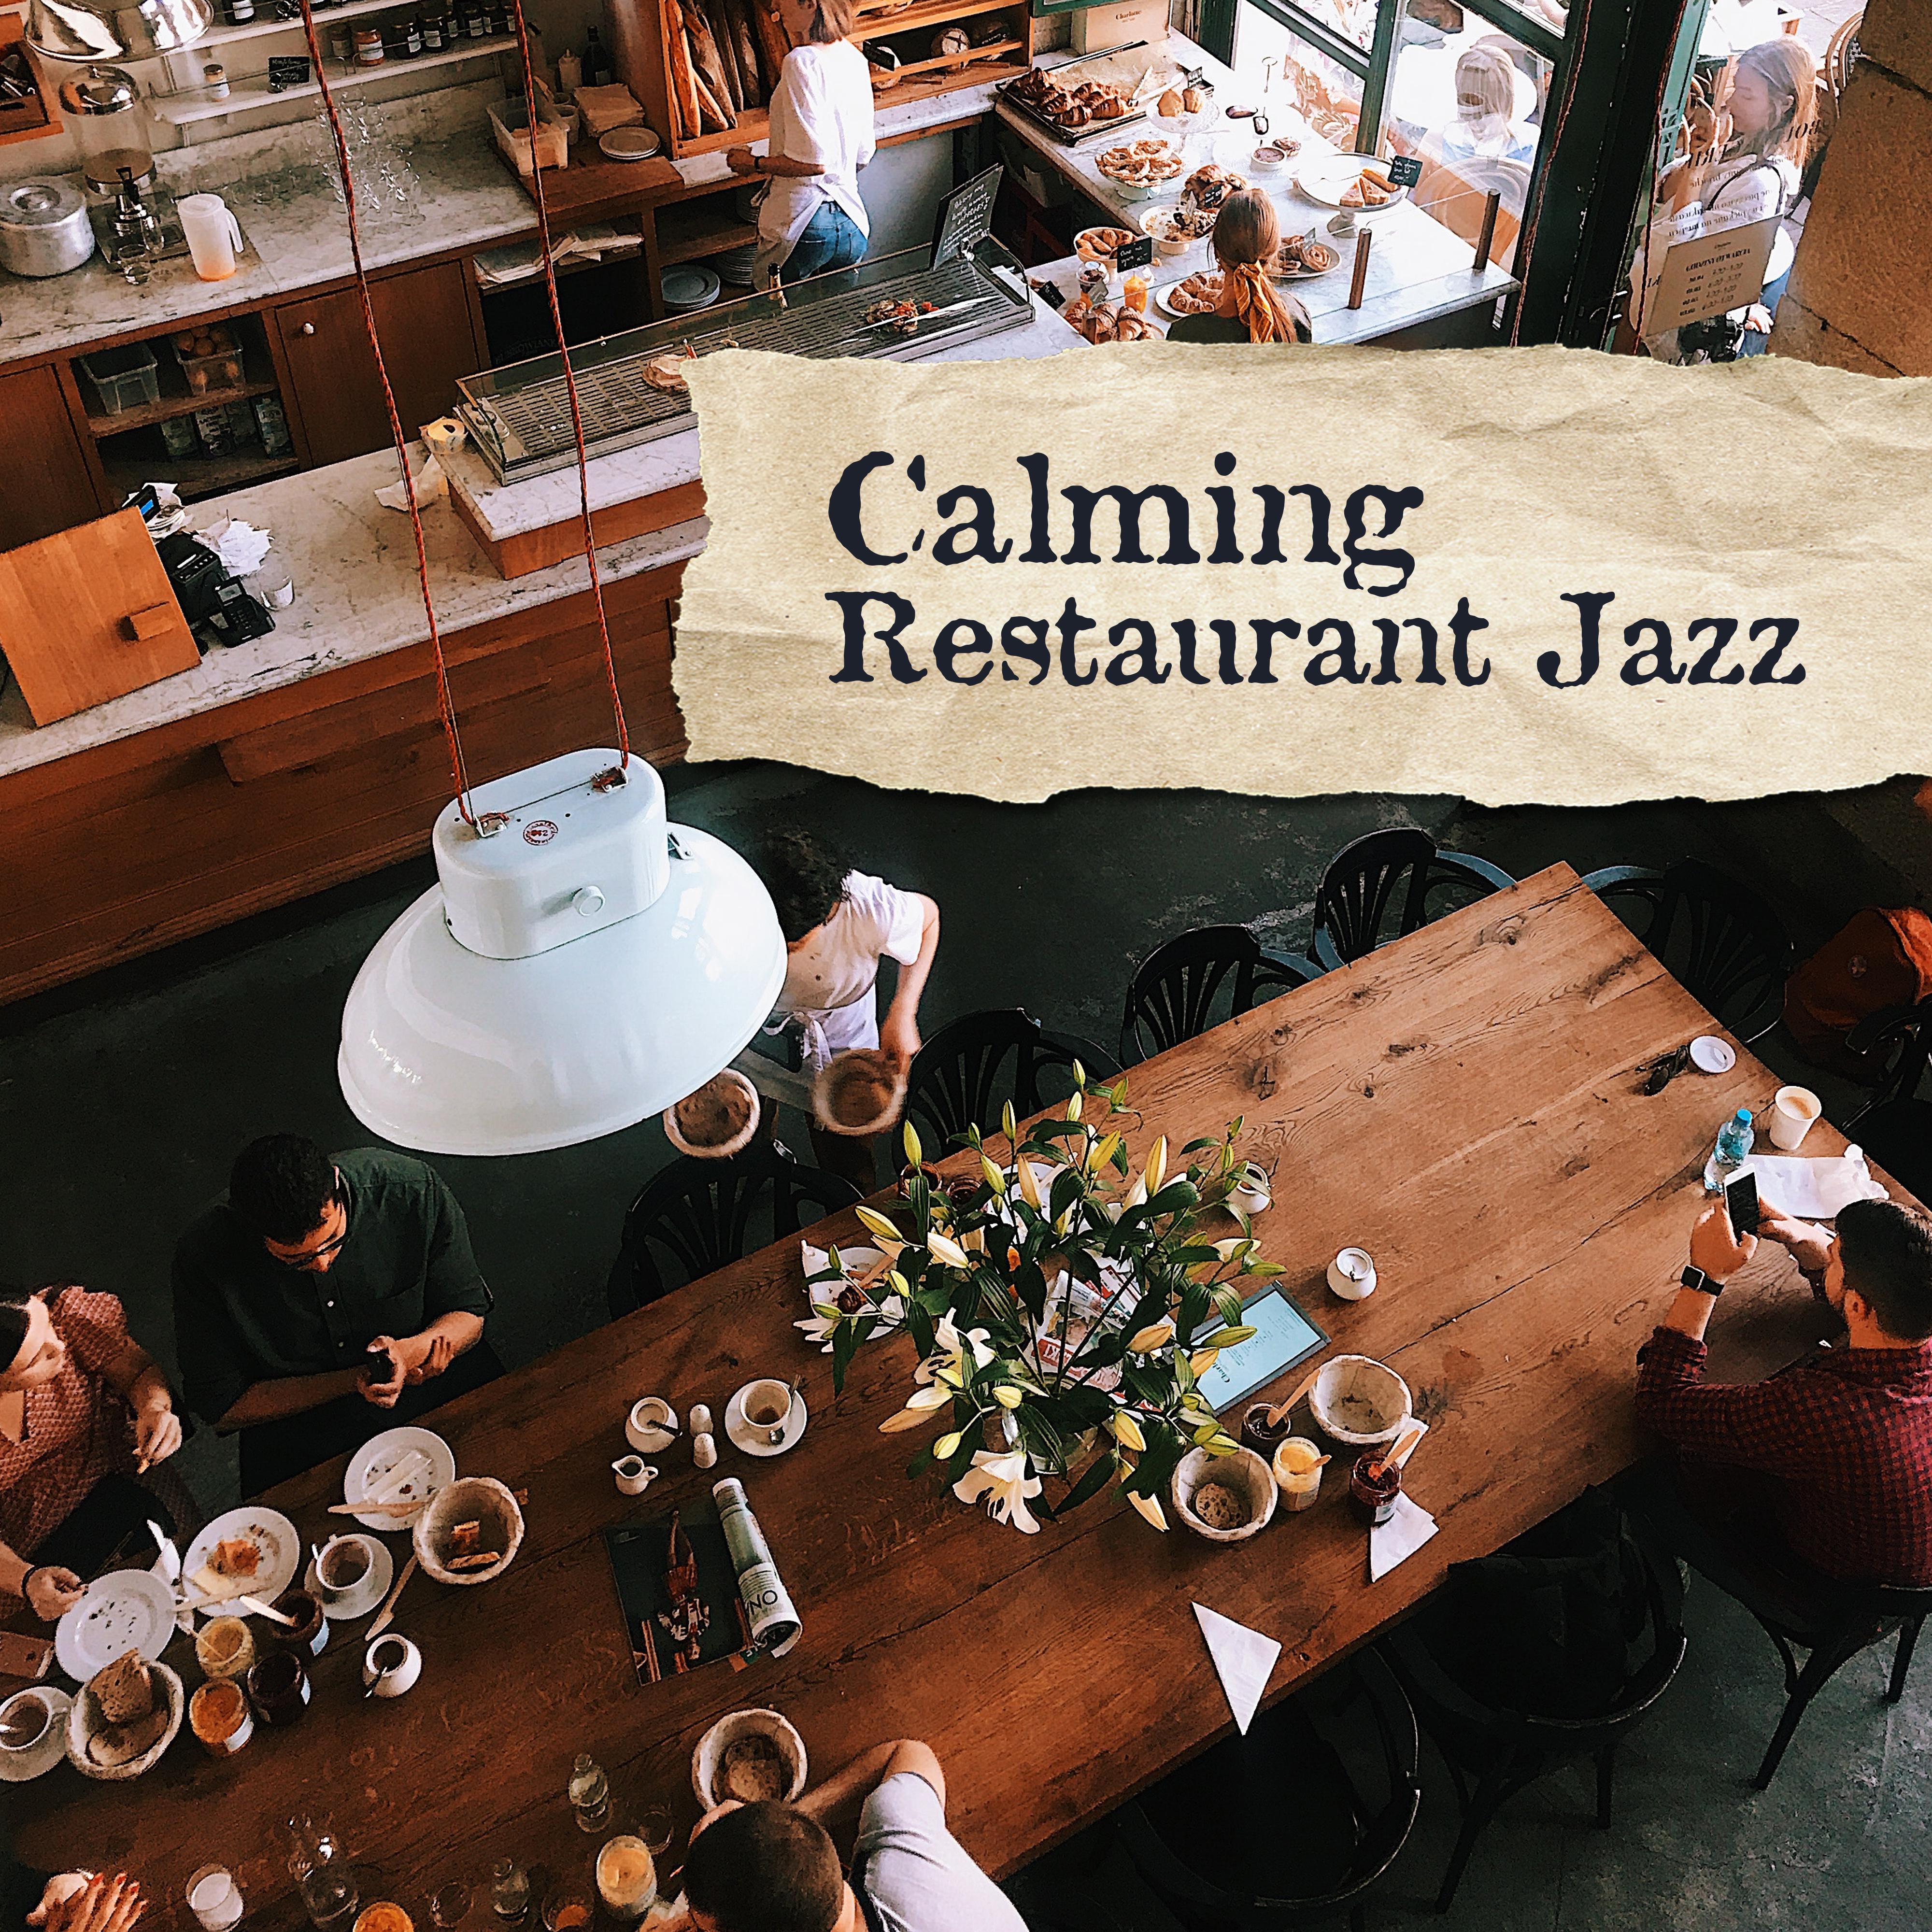 Calming Restaurant Jazz: Jazz Lounge, Coffee Music, Restaurant Background Jazz, Instrumental Jazz Music Ambient